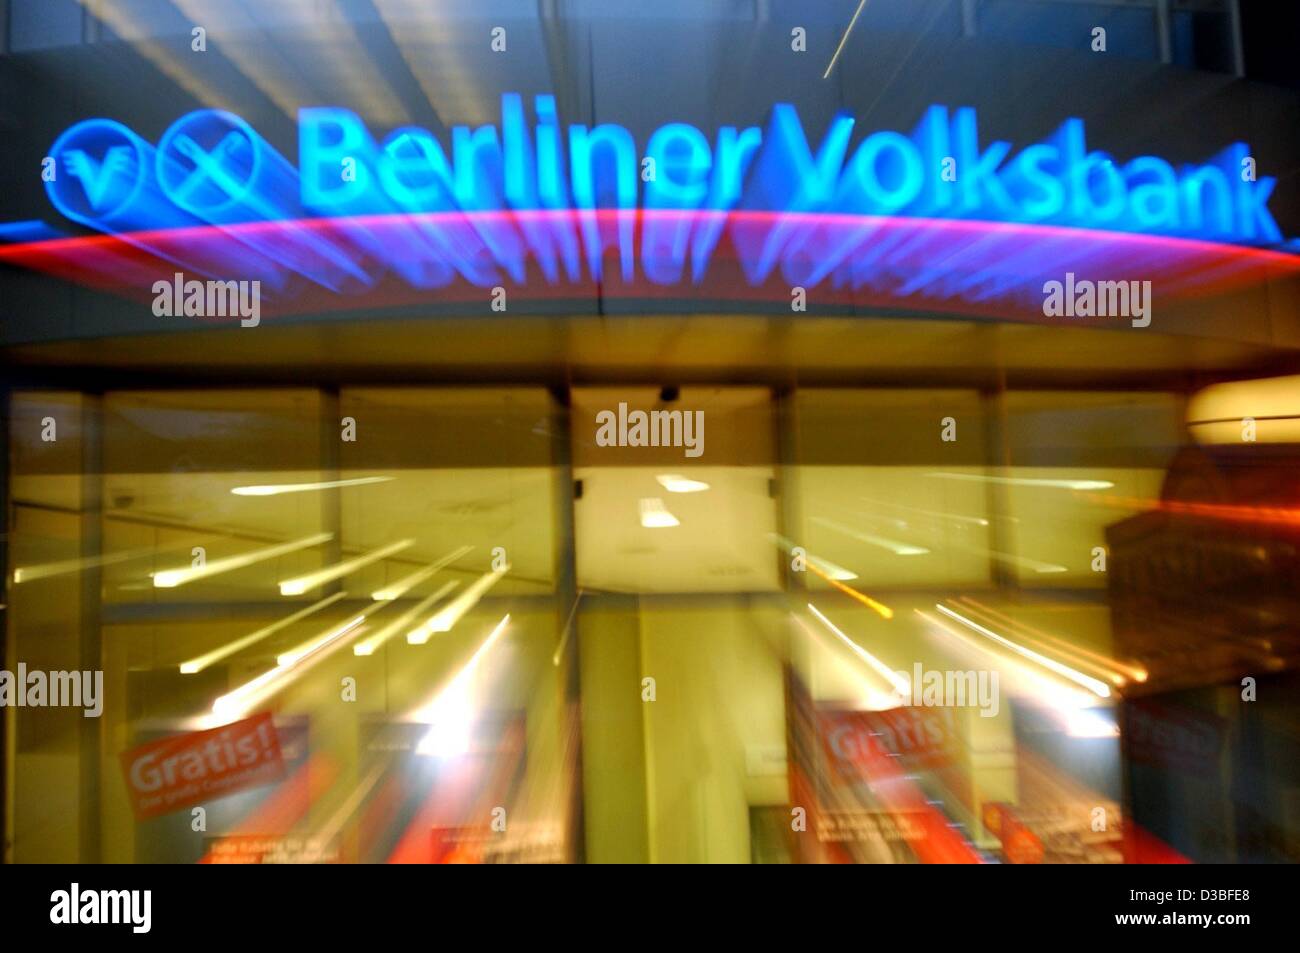 (Dpa) - beleuchtet die Neon Schrift und Logo Glanz über dem beleuchteten Eingang von der Berliner Volksbank, deutsche Finanz- und Bankinstitut, 20. Juni 2003 in Berlin abgebildet. Es war Annouced bei der Bilanz-Pressekonferenz am 23. Juni 2003, dass die "Berliner Volksbank", Deutschland das größte co-Betrieb Stockfoto